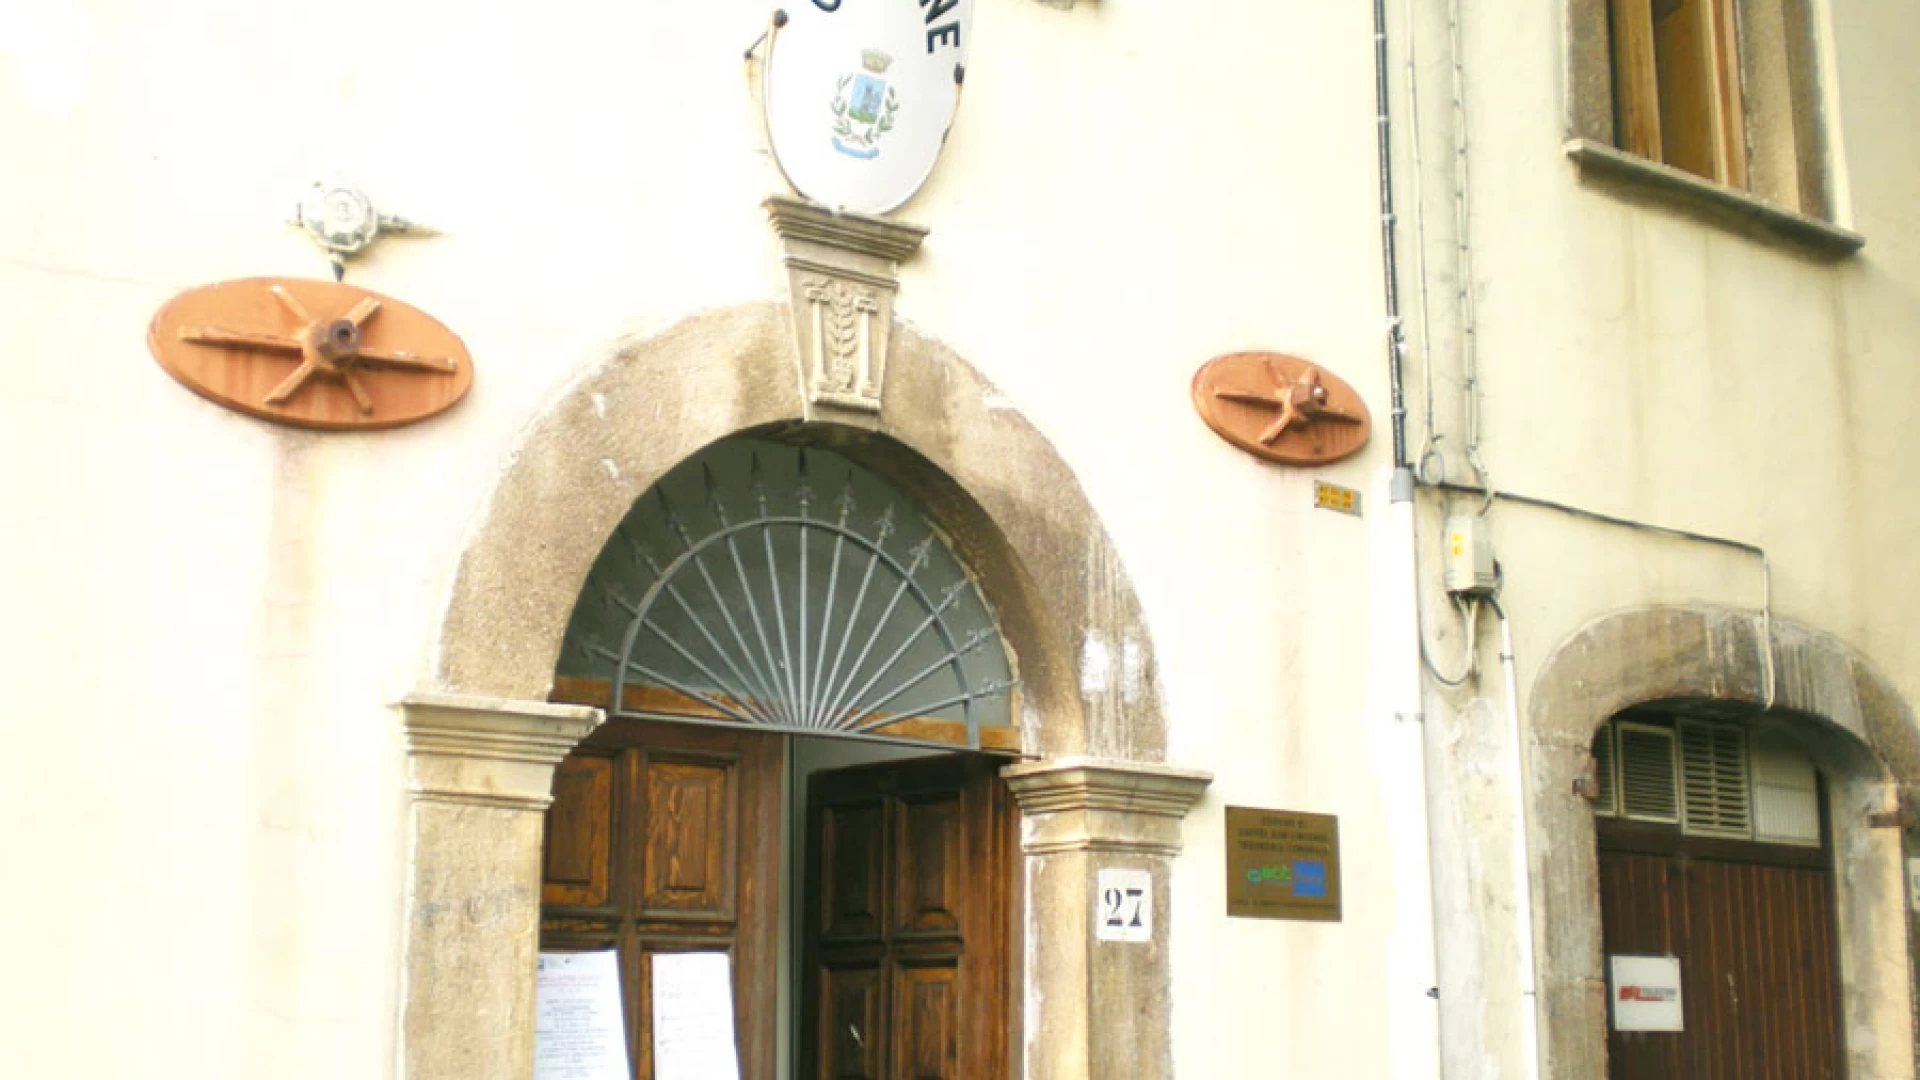 Castel San Vincenzo: assenza dei parametri anticontagio, il gruppo consiliare di minoranza abbandona l'assise. La nota di Orgoglio per Castel San Vincenzo